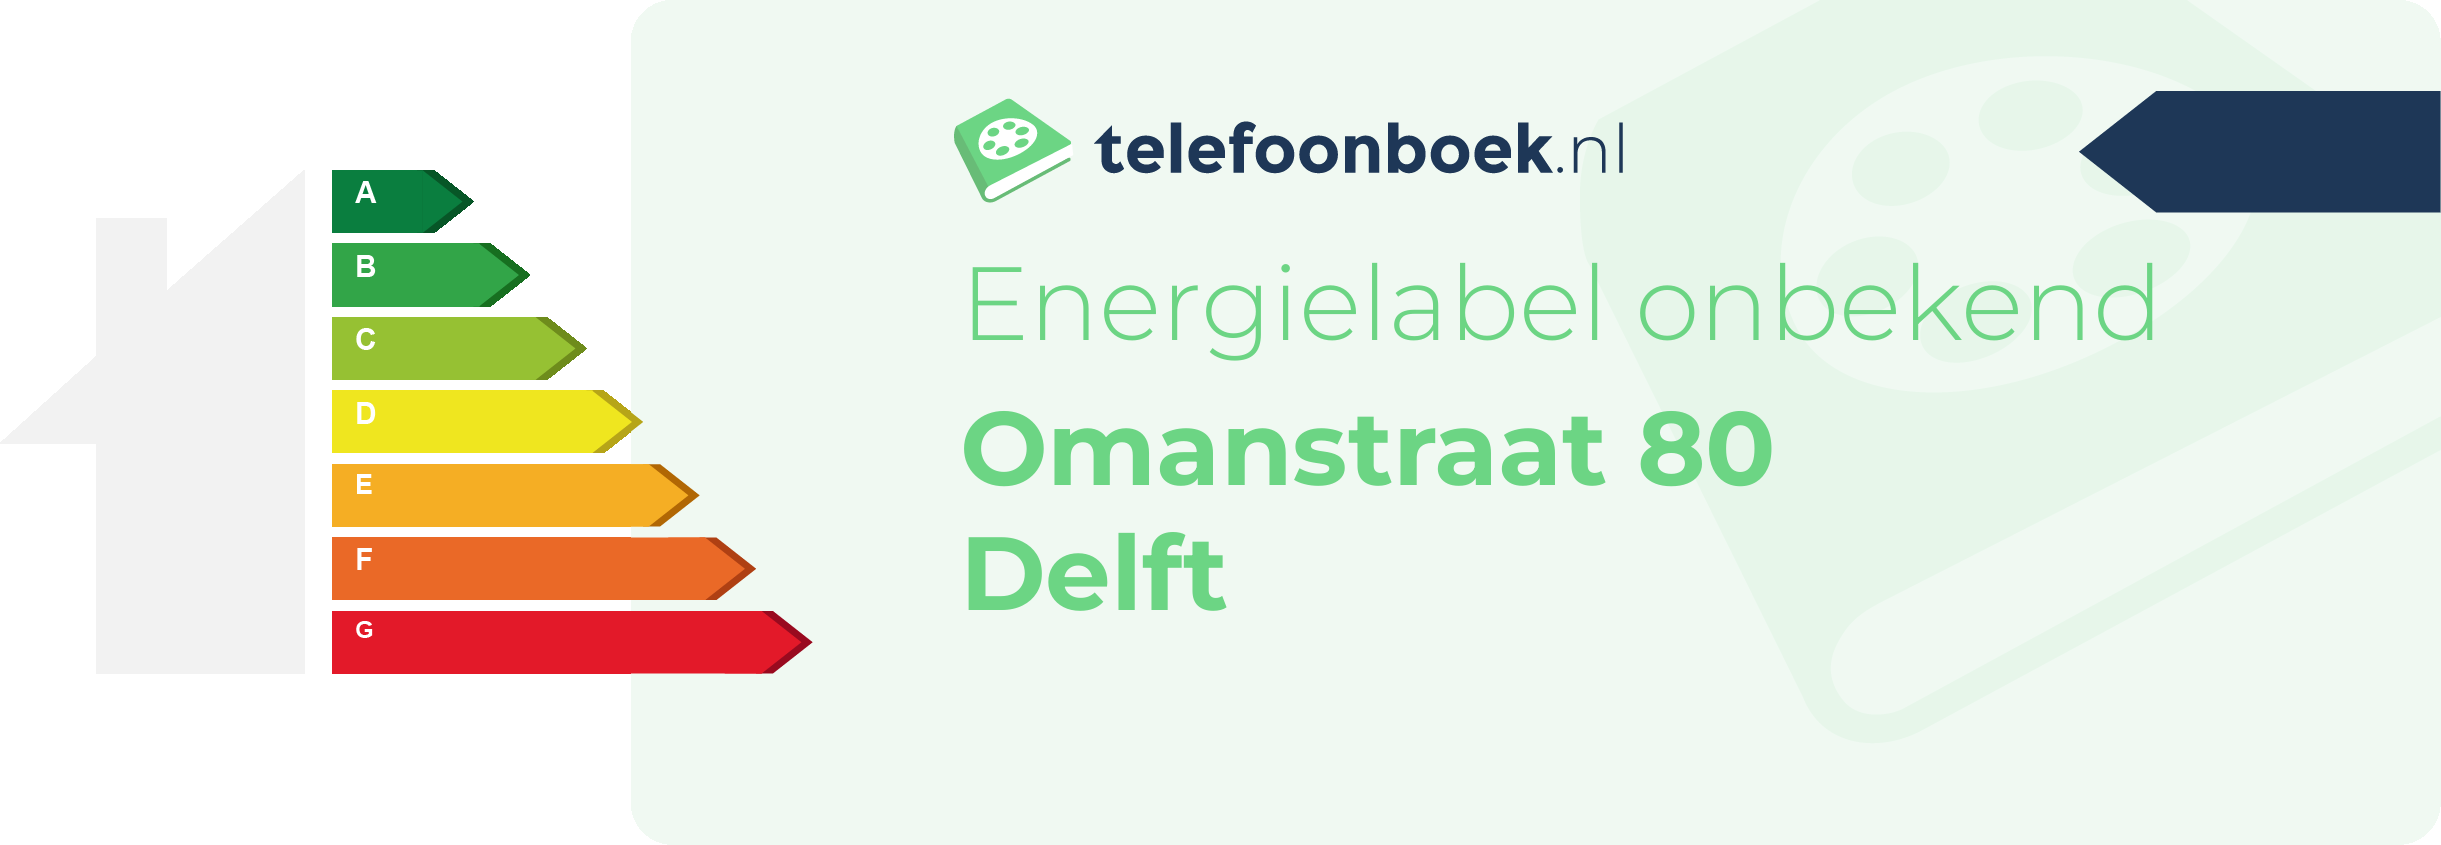 Energielabel Omanstraat 80 Delft